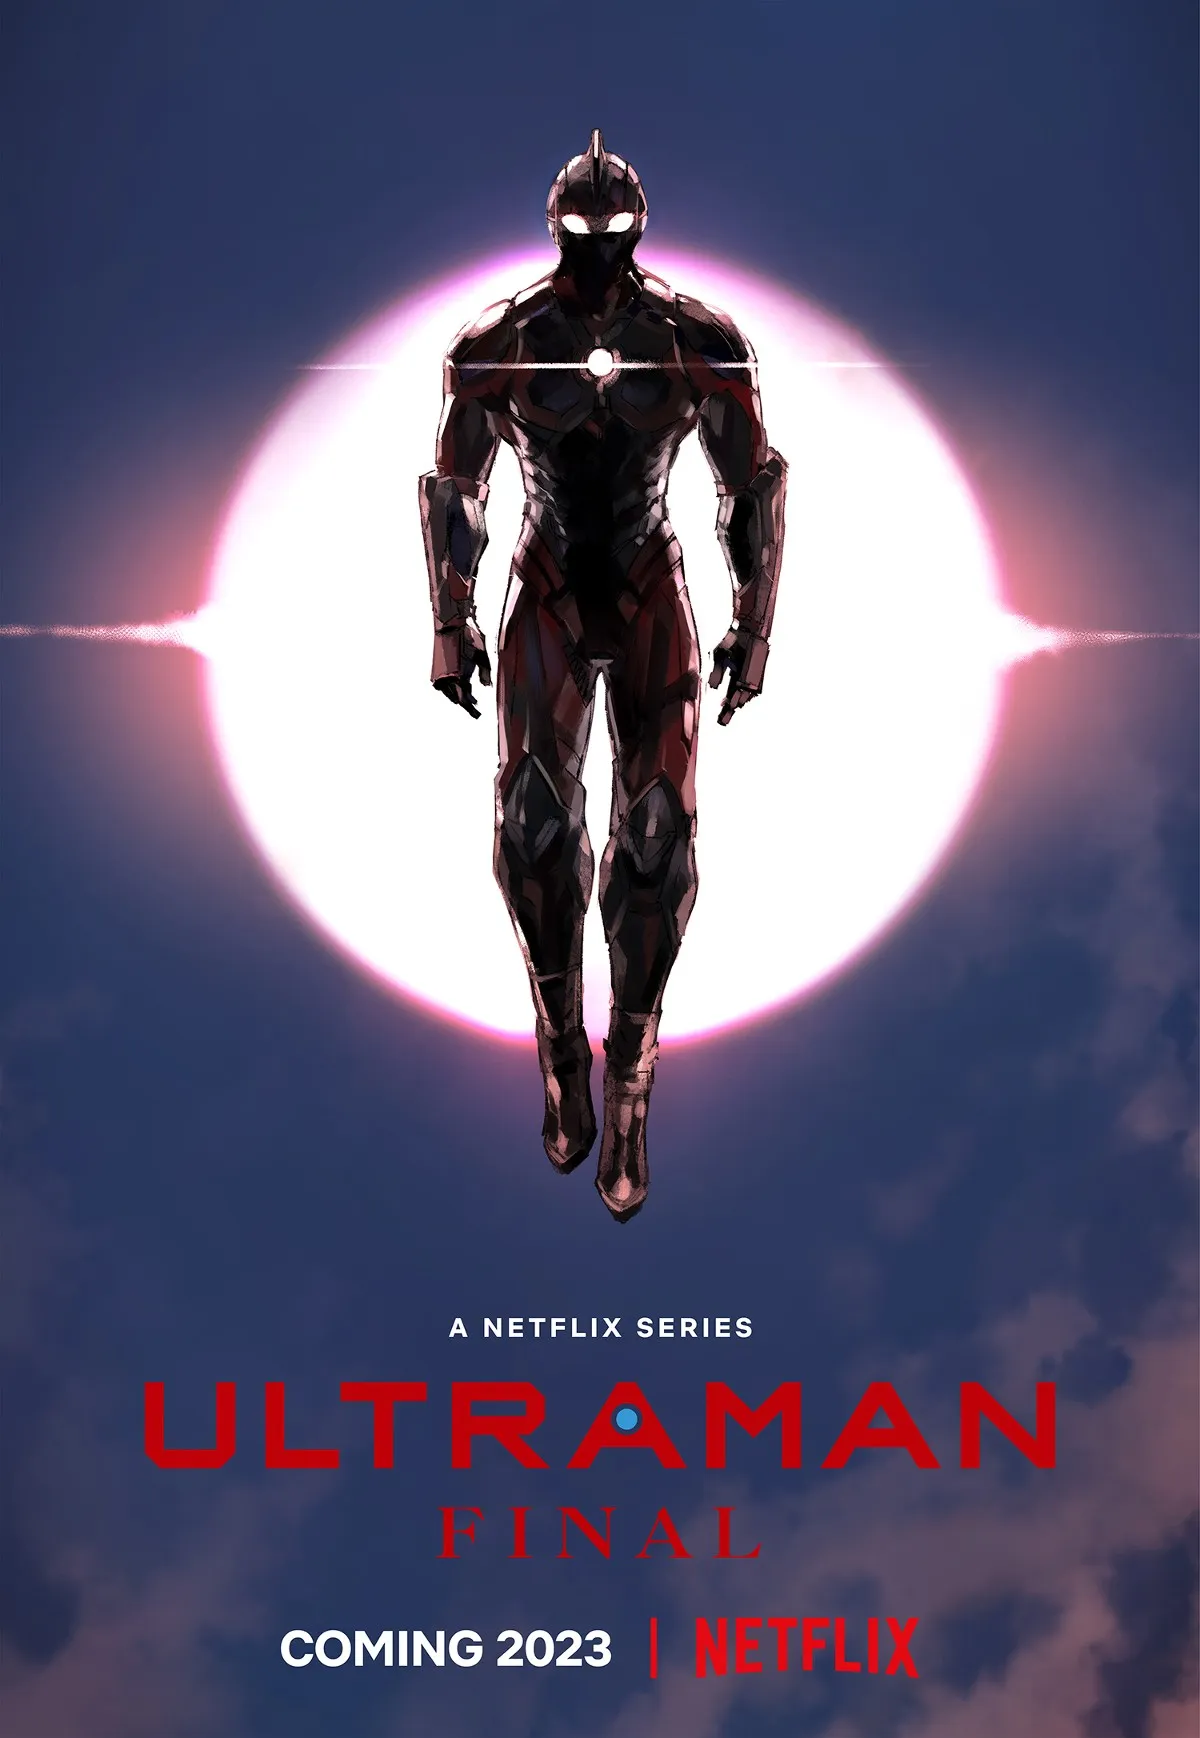 ultraman afffiche netflix - Ultraman : la saison 3 est disponible sur Netflix  ! ( + Infos sur Ultraman Kaiju)